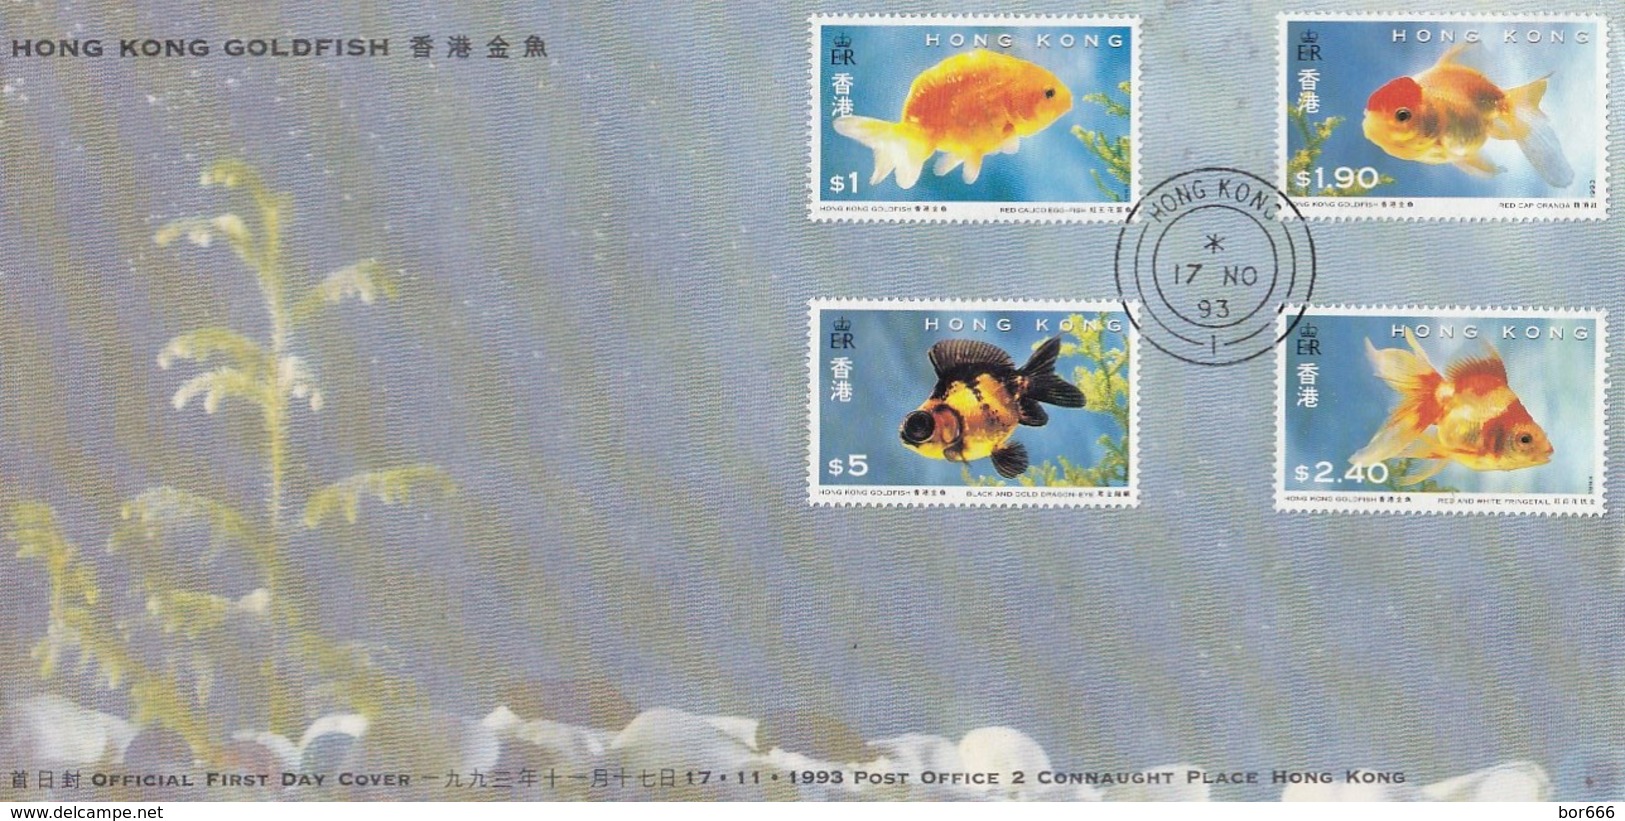 GOOD HONG KONG FDC 1993 - Goldfishes - FDC